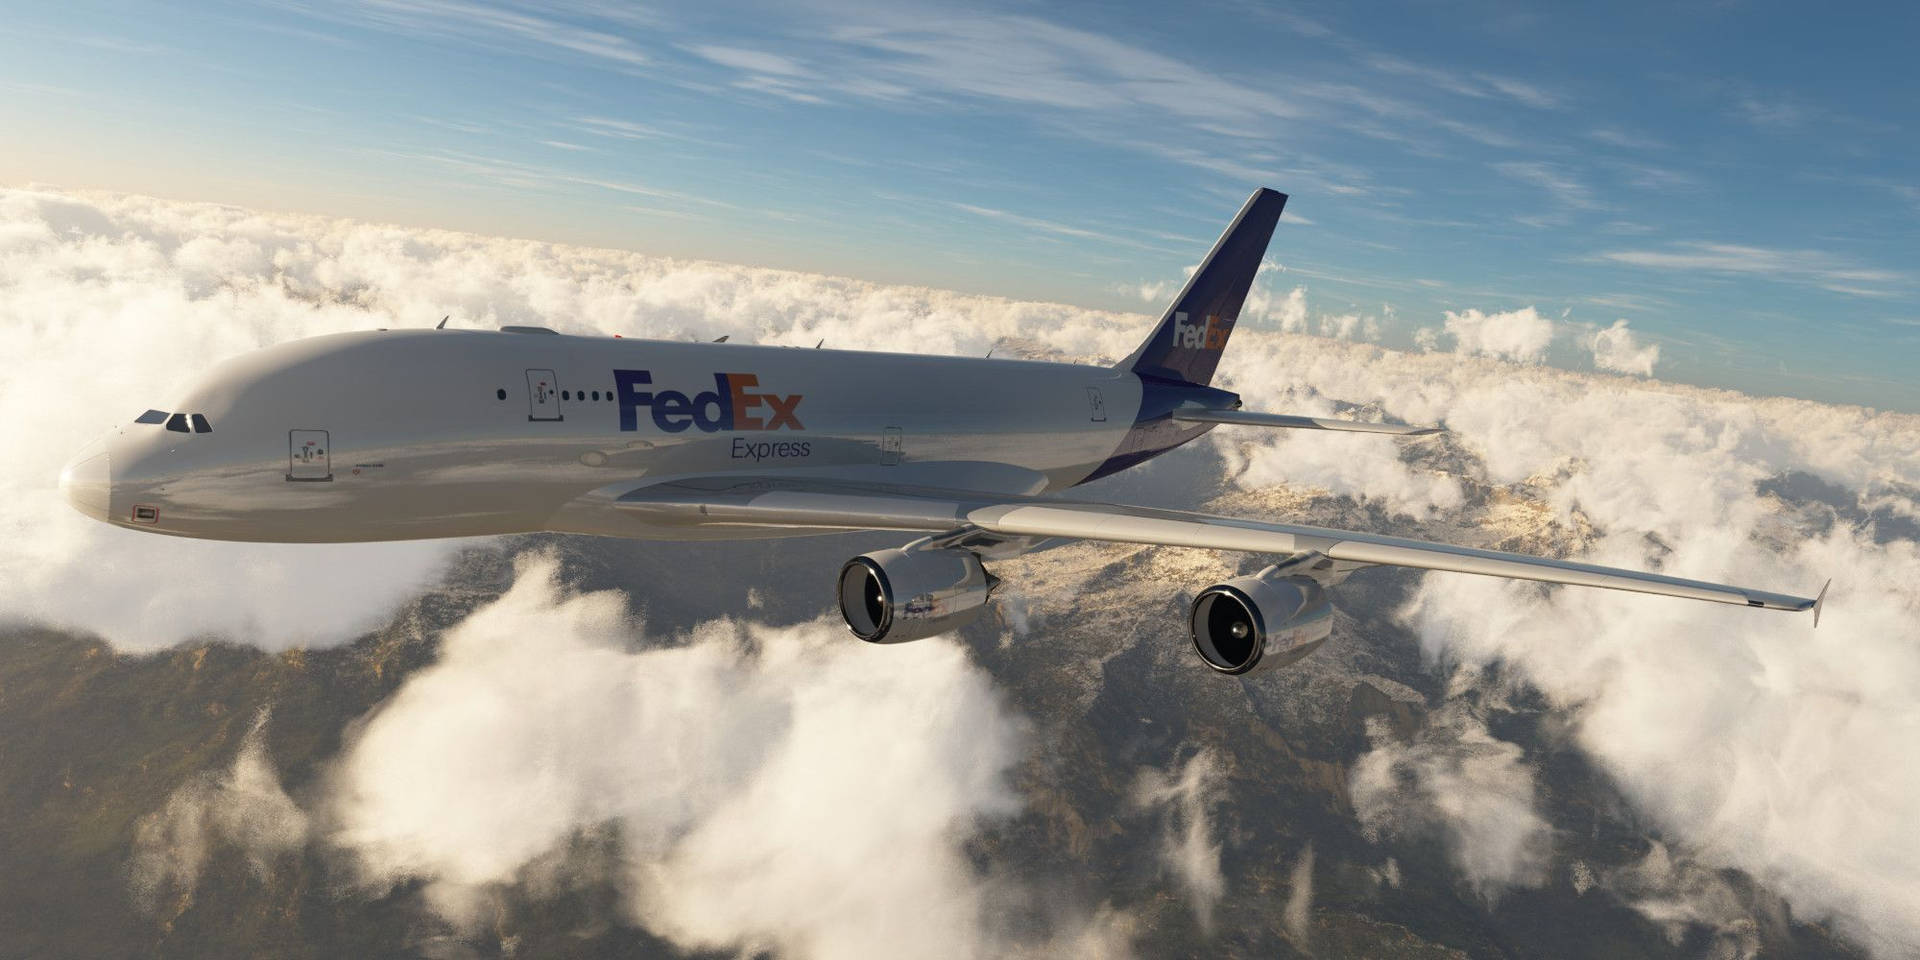 Fedex Plane Hav Af Skyer Wallpaper